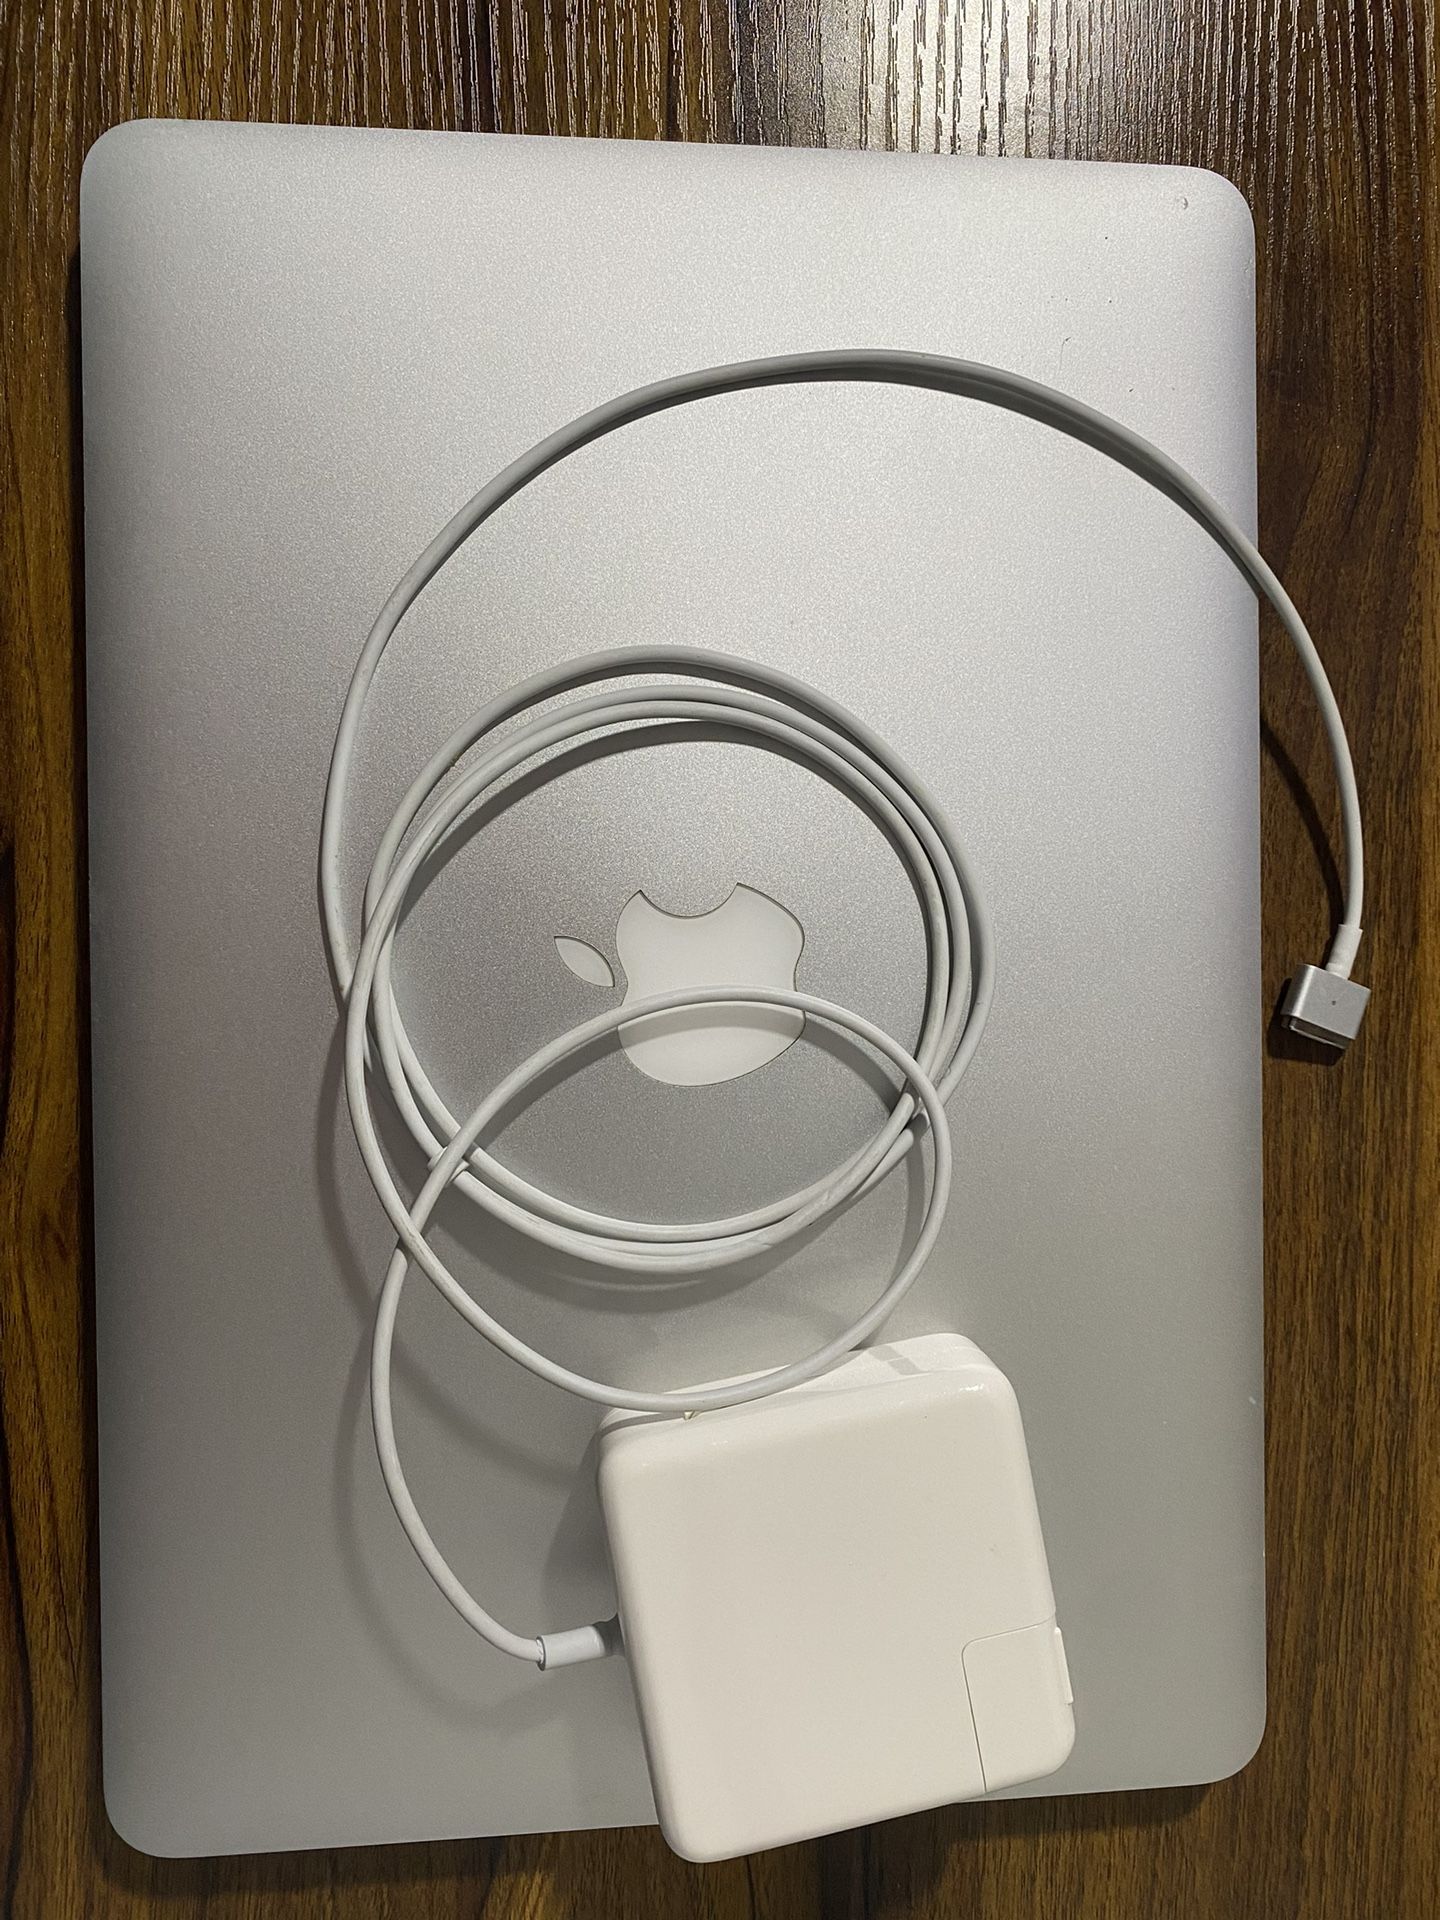 MacBook Pro 2013 + Never Used Apple Trackpad 